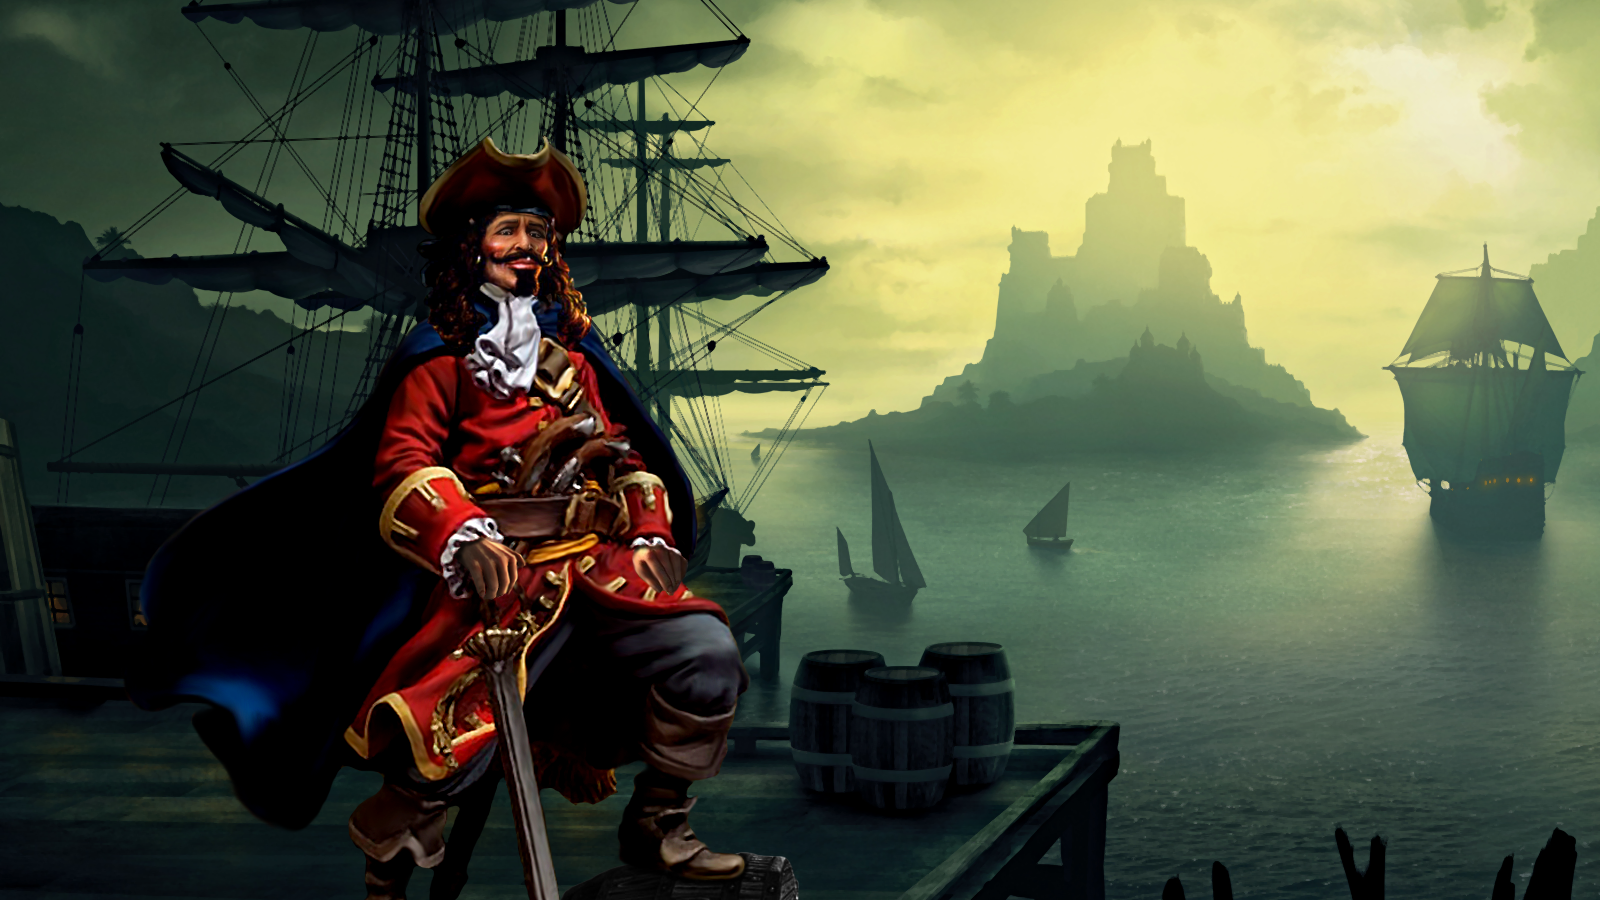 Разблокировать пиратка. Порт Ройал пираты Карибского моря. Флибустьеры пираты Корсары. Тортуга корабль пираты Карибского моря.